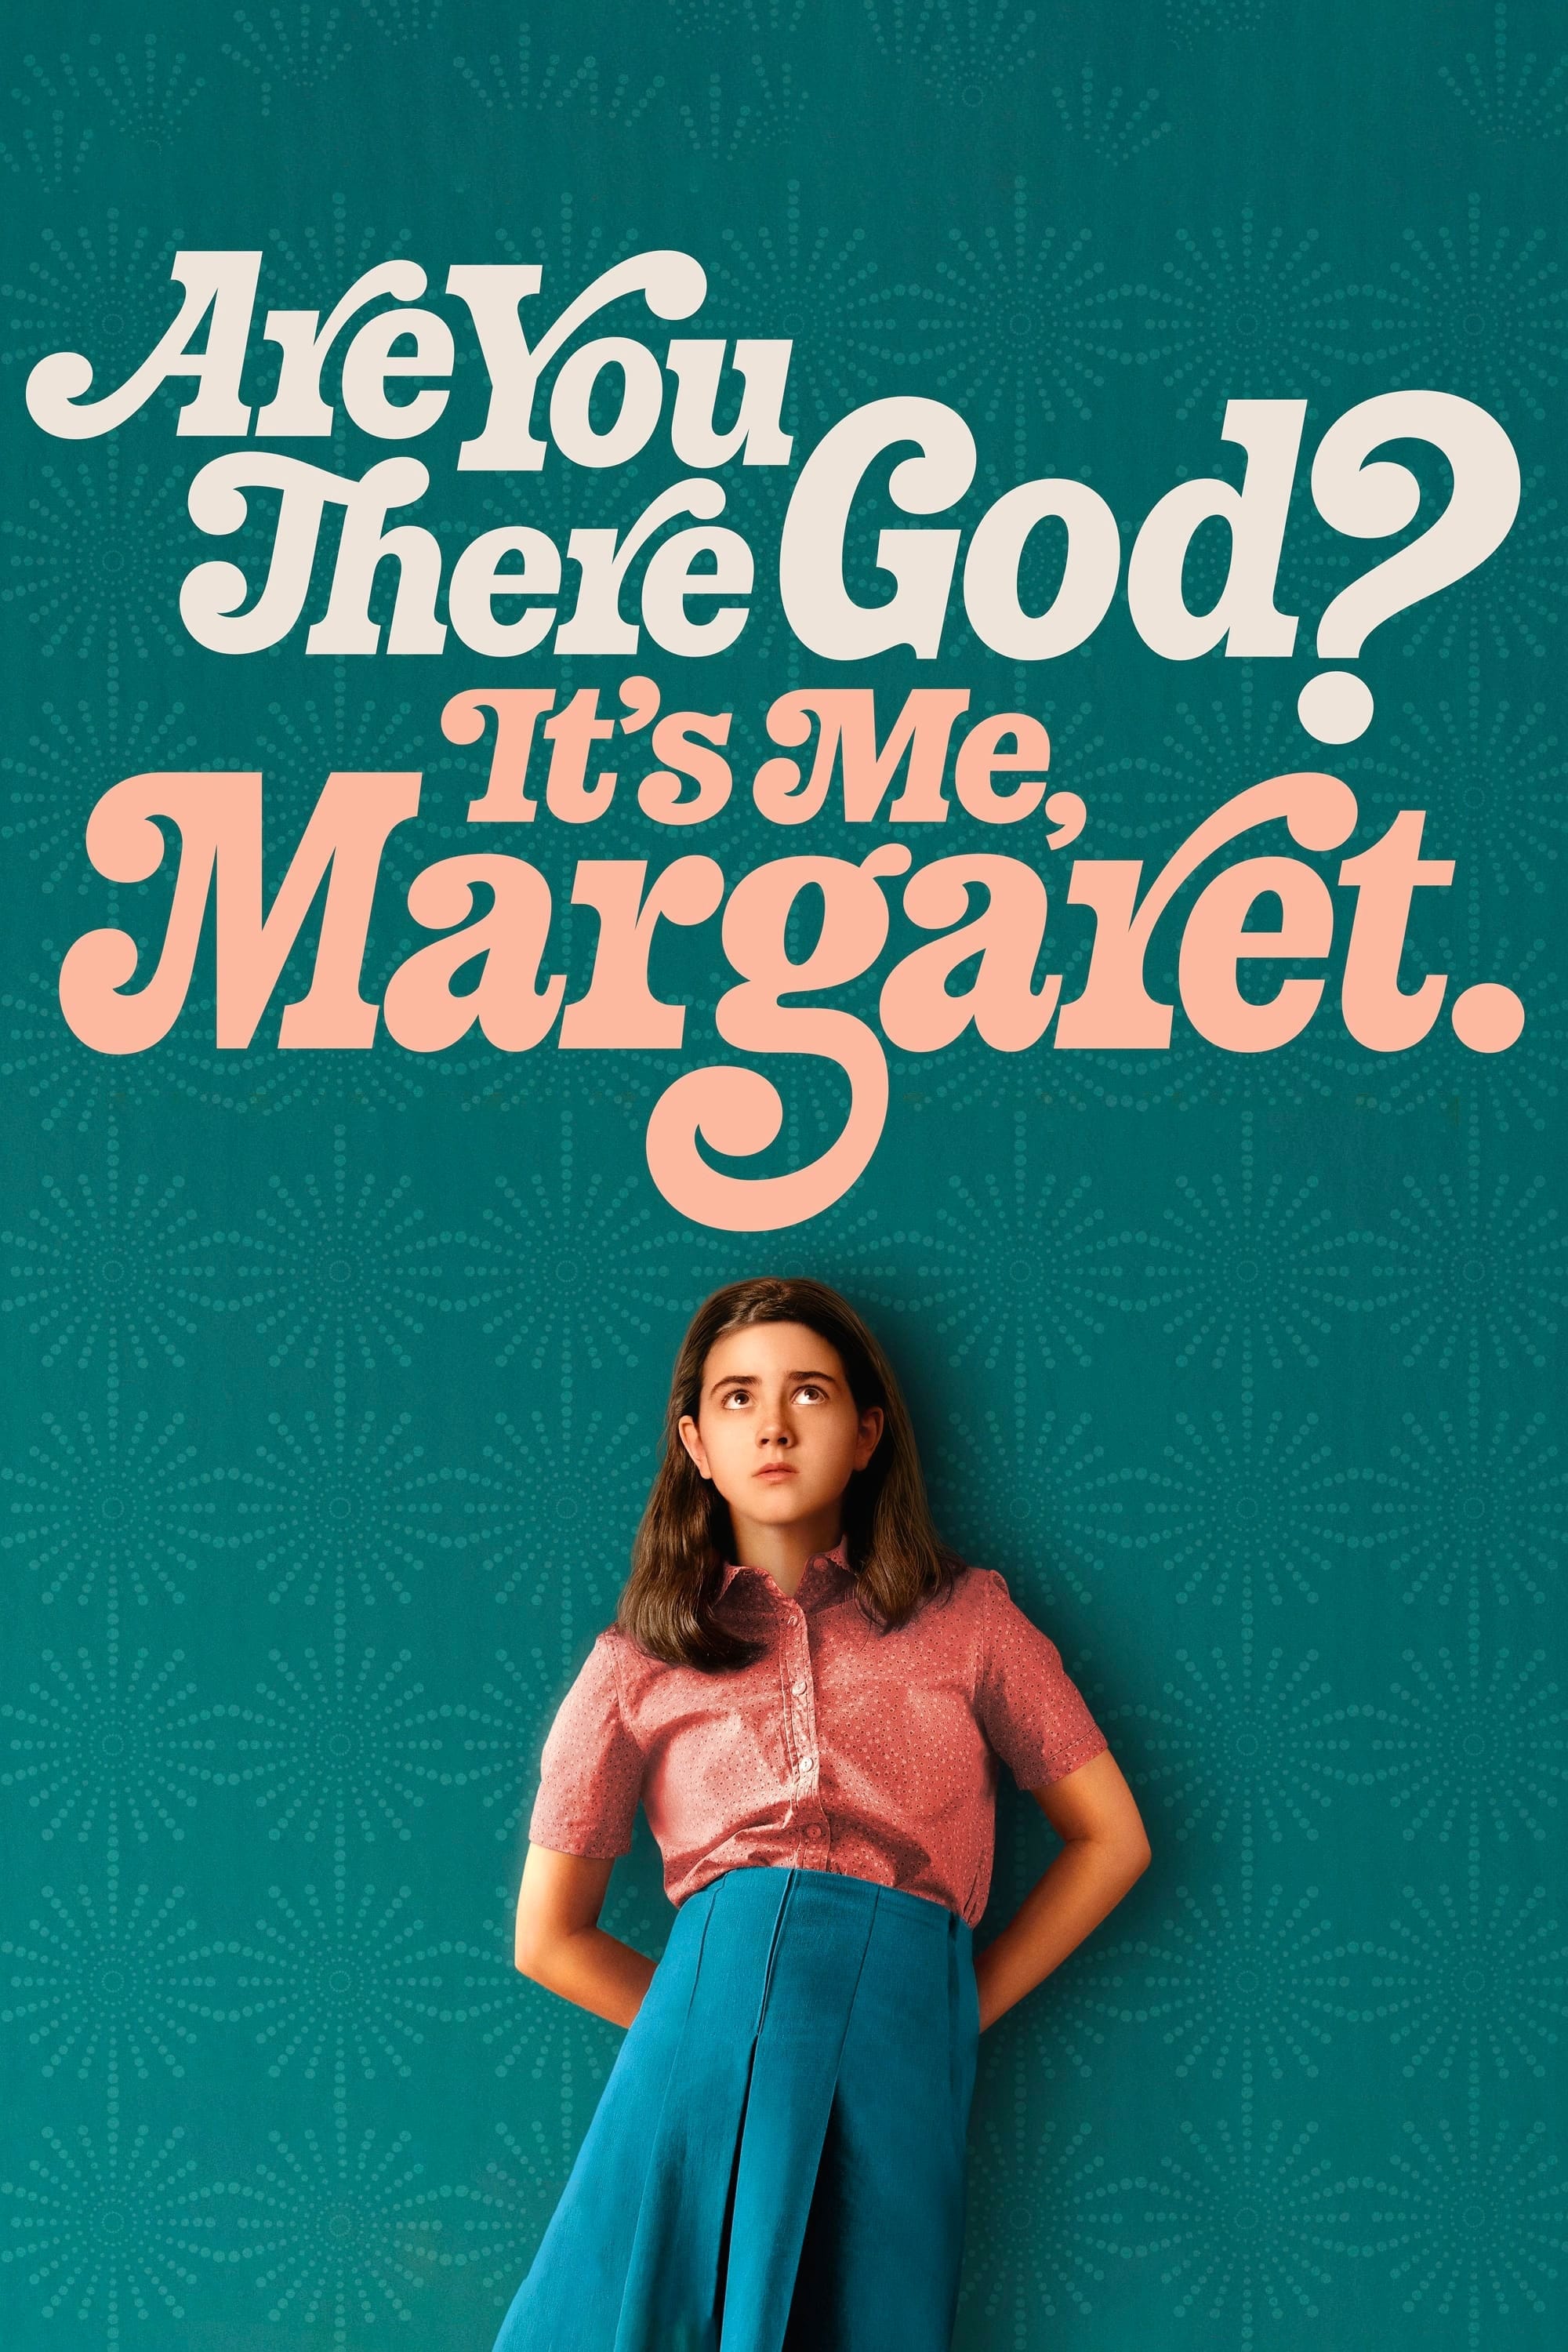 אלוהים, אתה שם? זאת אני, מרגרט.